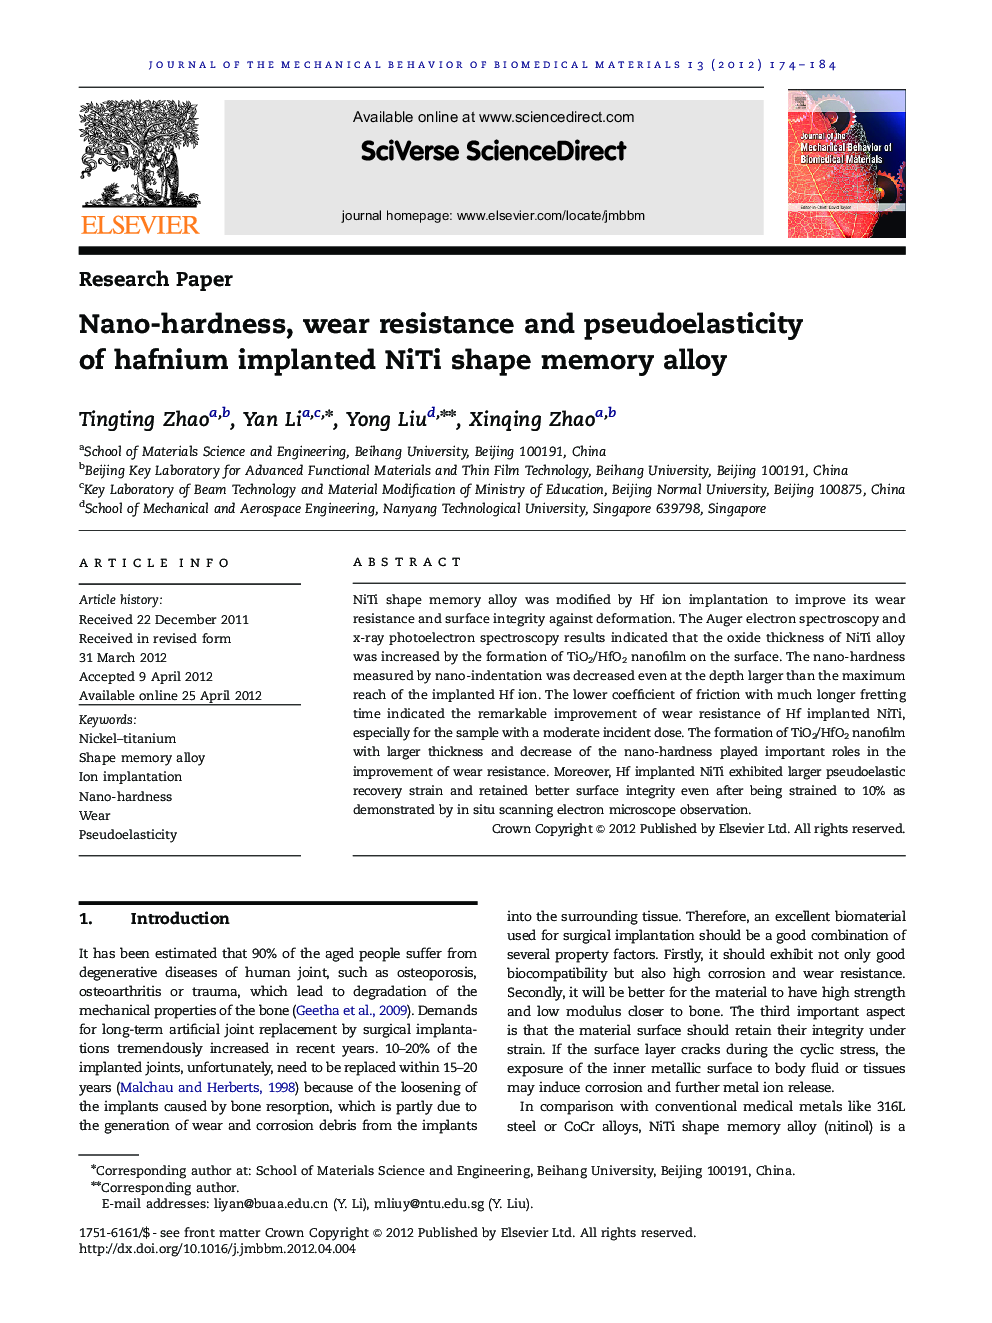 Nano-hardness, wear resistance and pseudoelasticity of hafnium implanted NiTi shape memory alloy